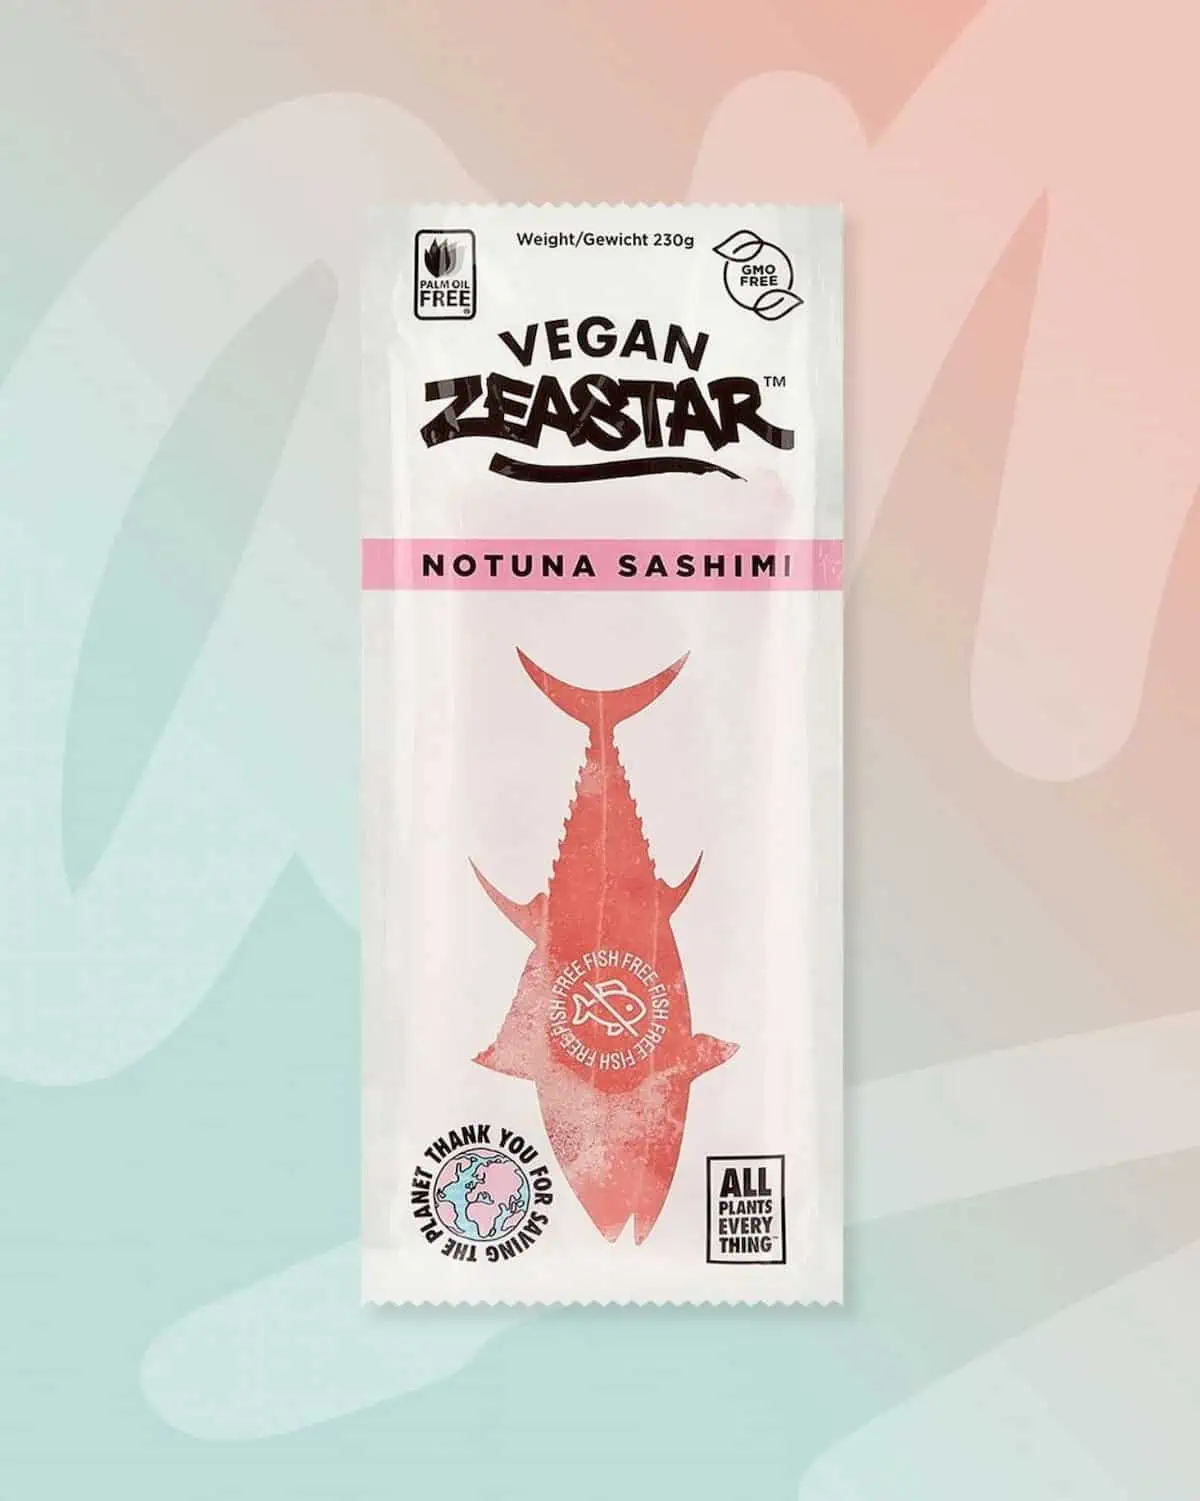 Vegan Zeastar brand vegan sashimi.